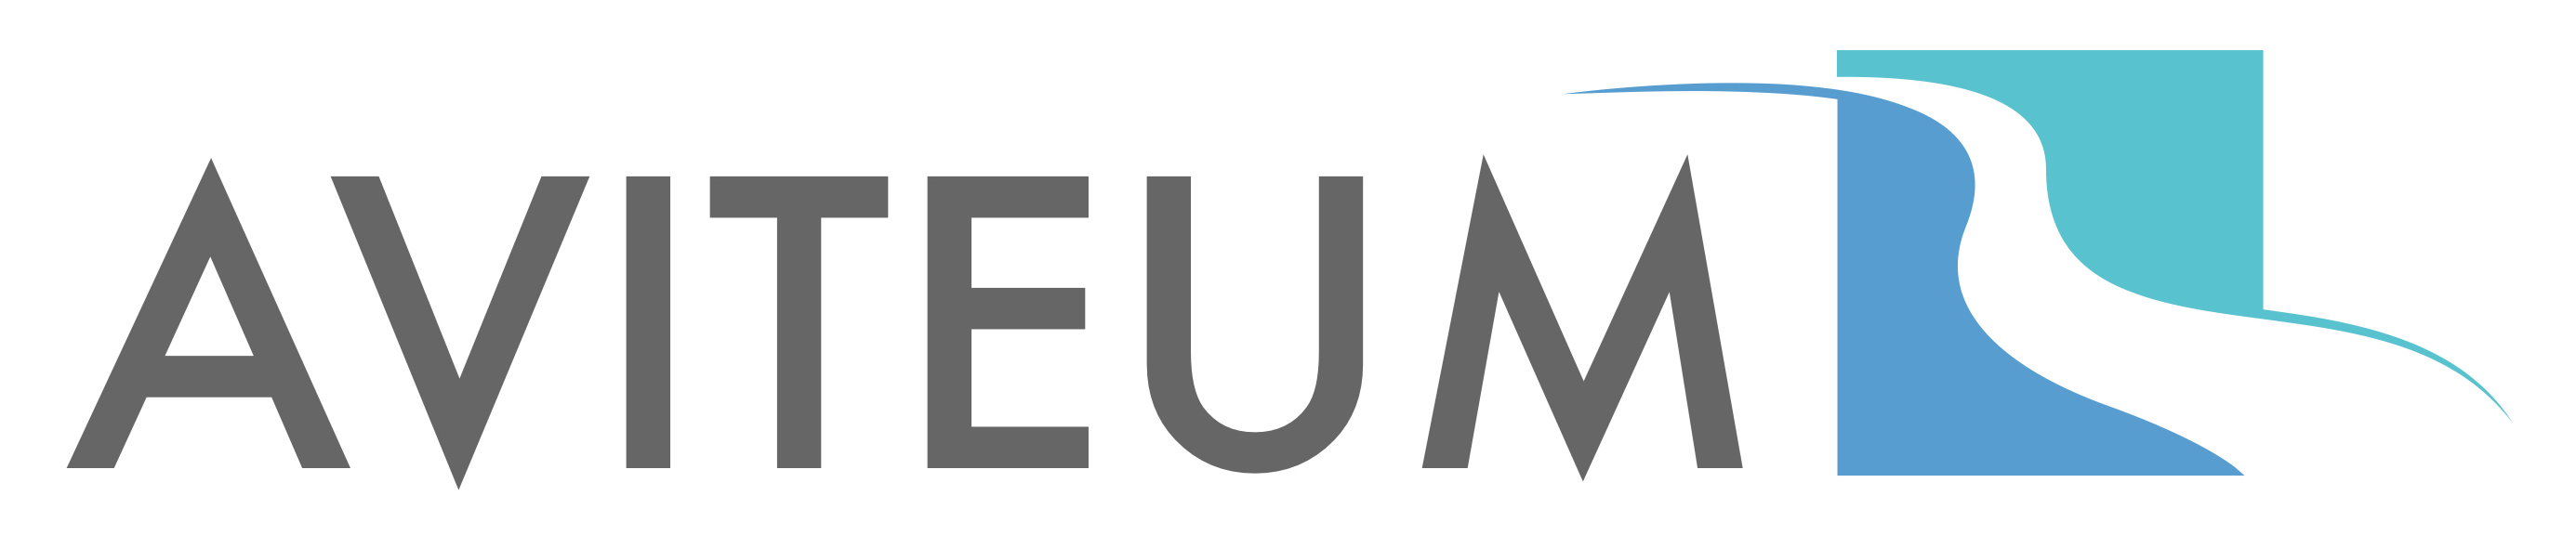 AVITEUM logo